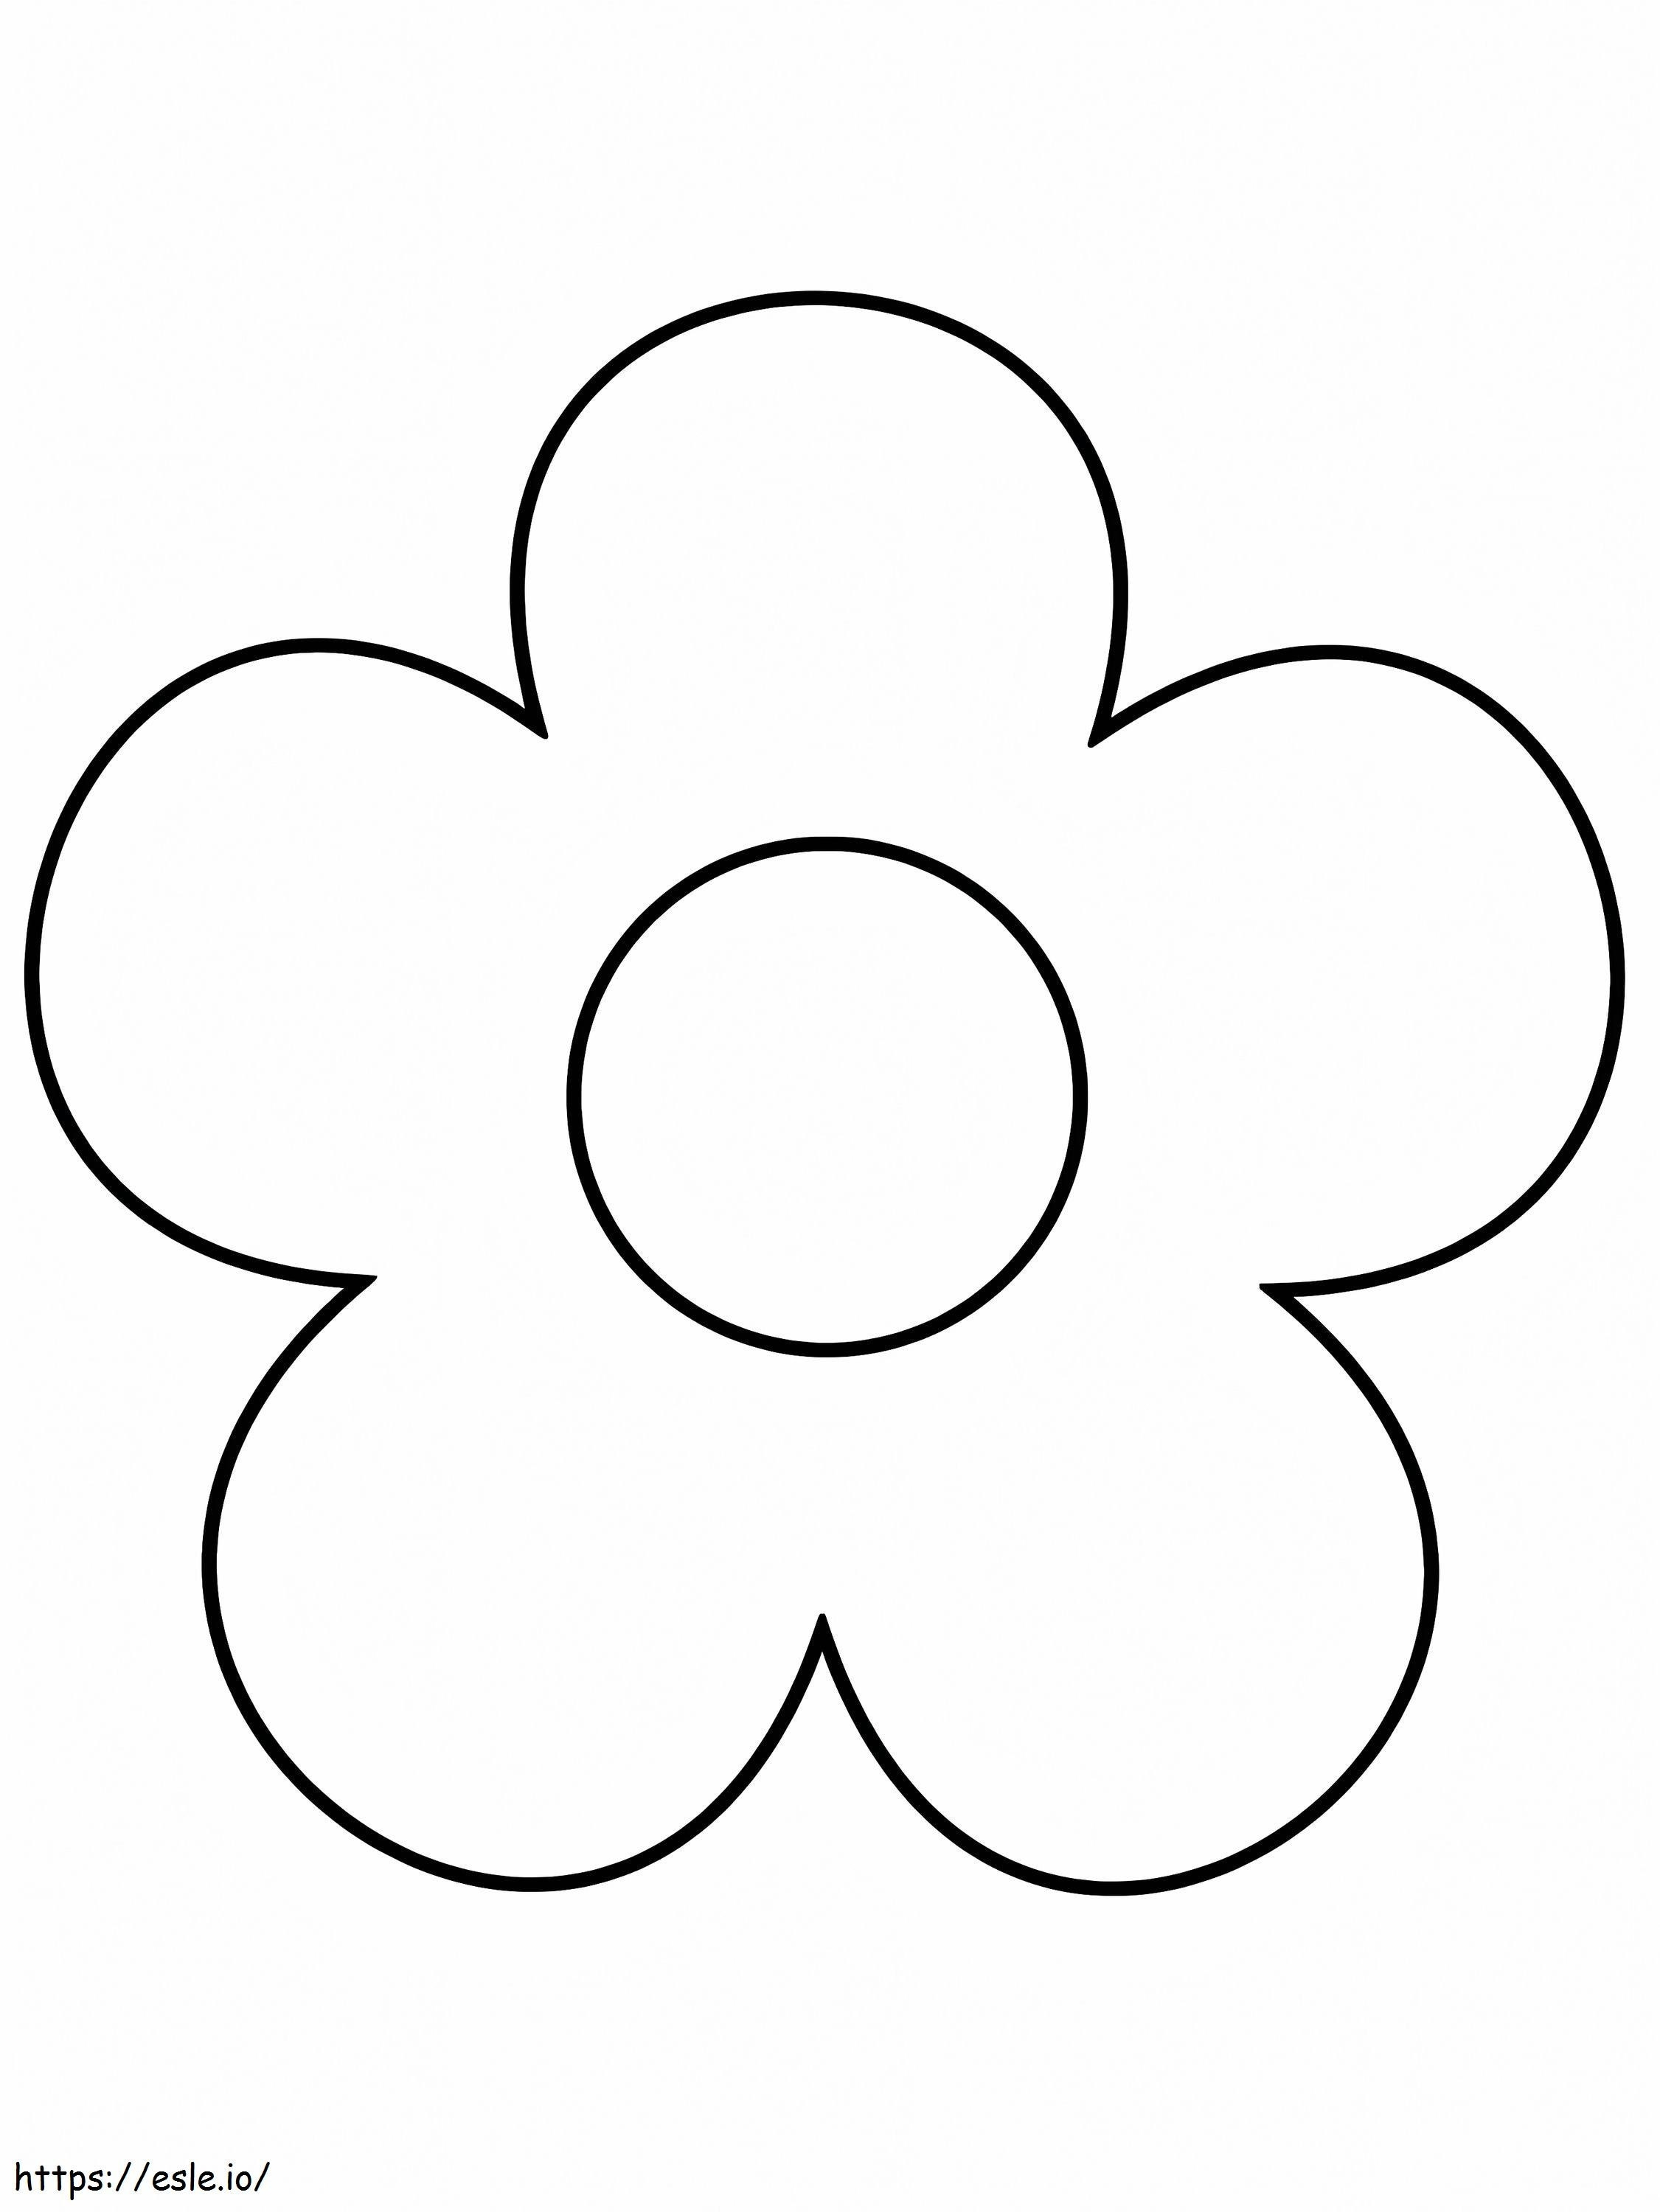 Forma de flor muy simple. para colorear